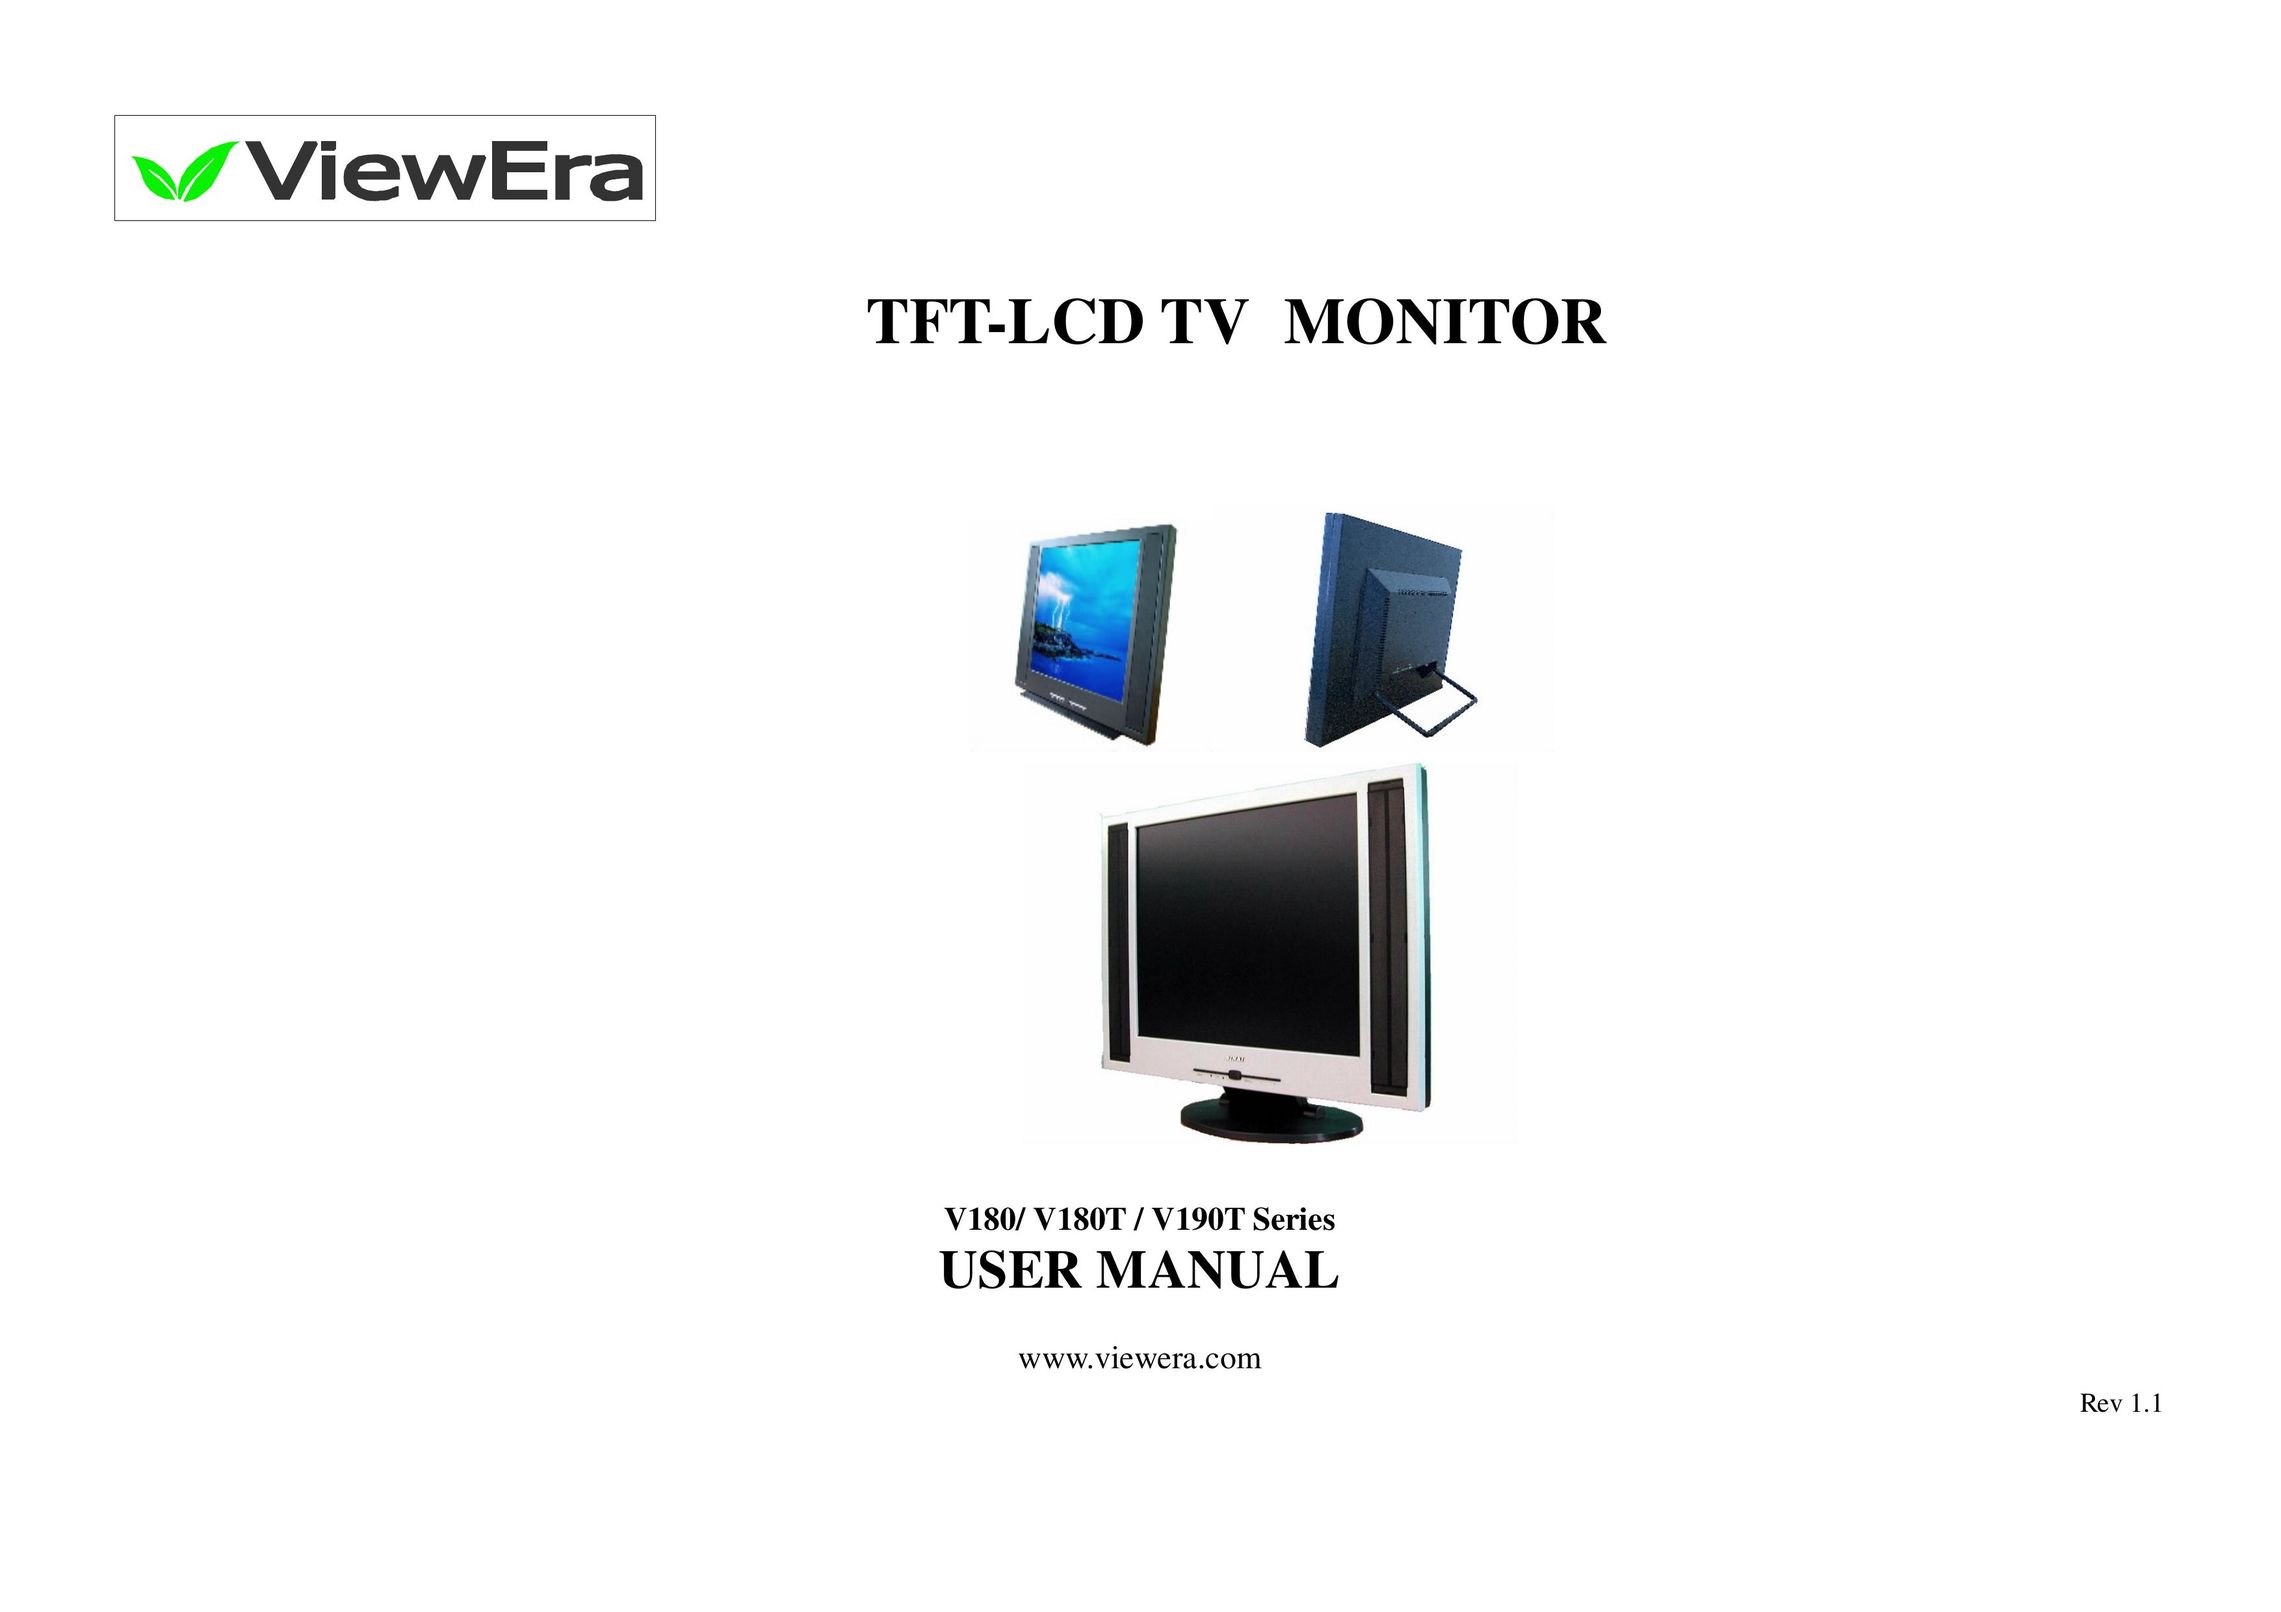 ViewEra V180T Series Flat Panel Television User Manual